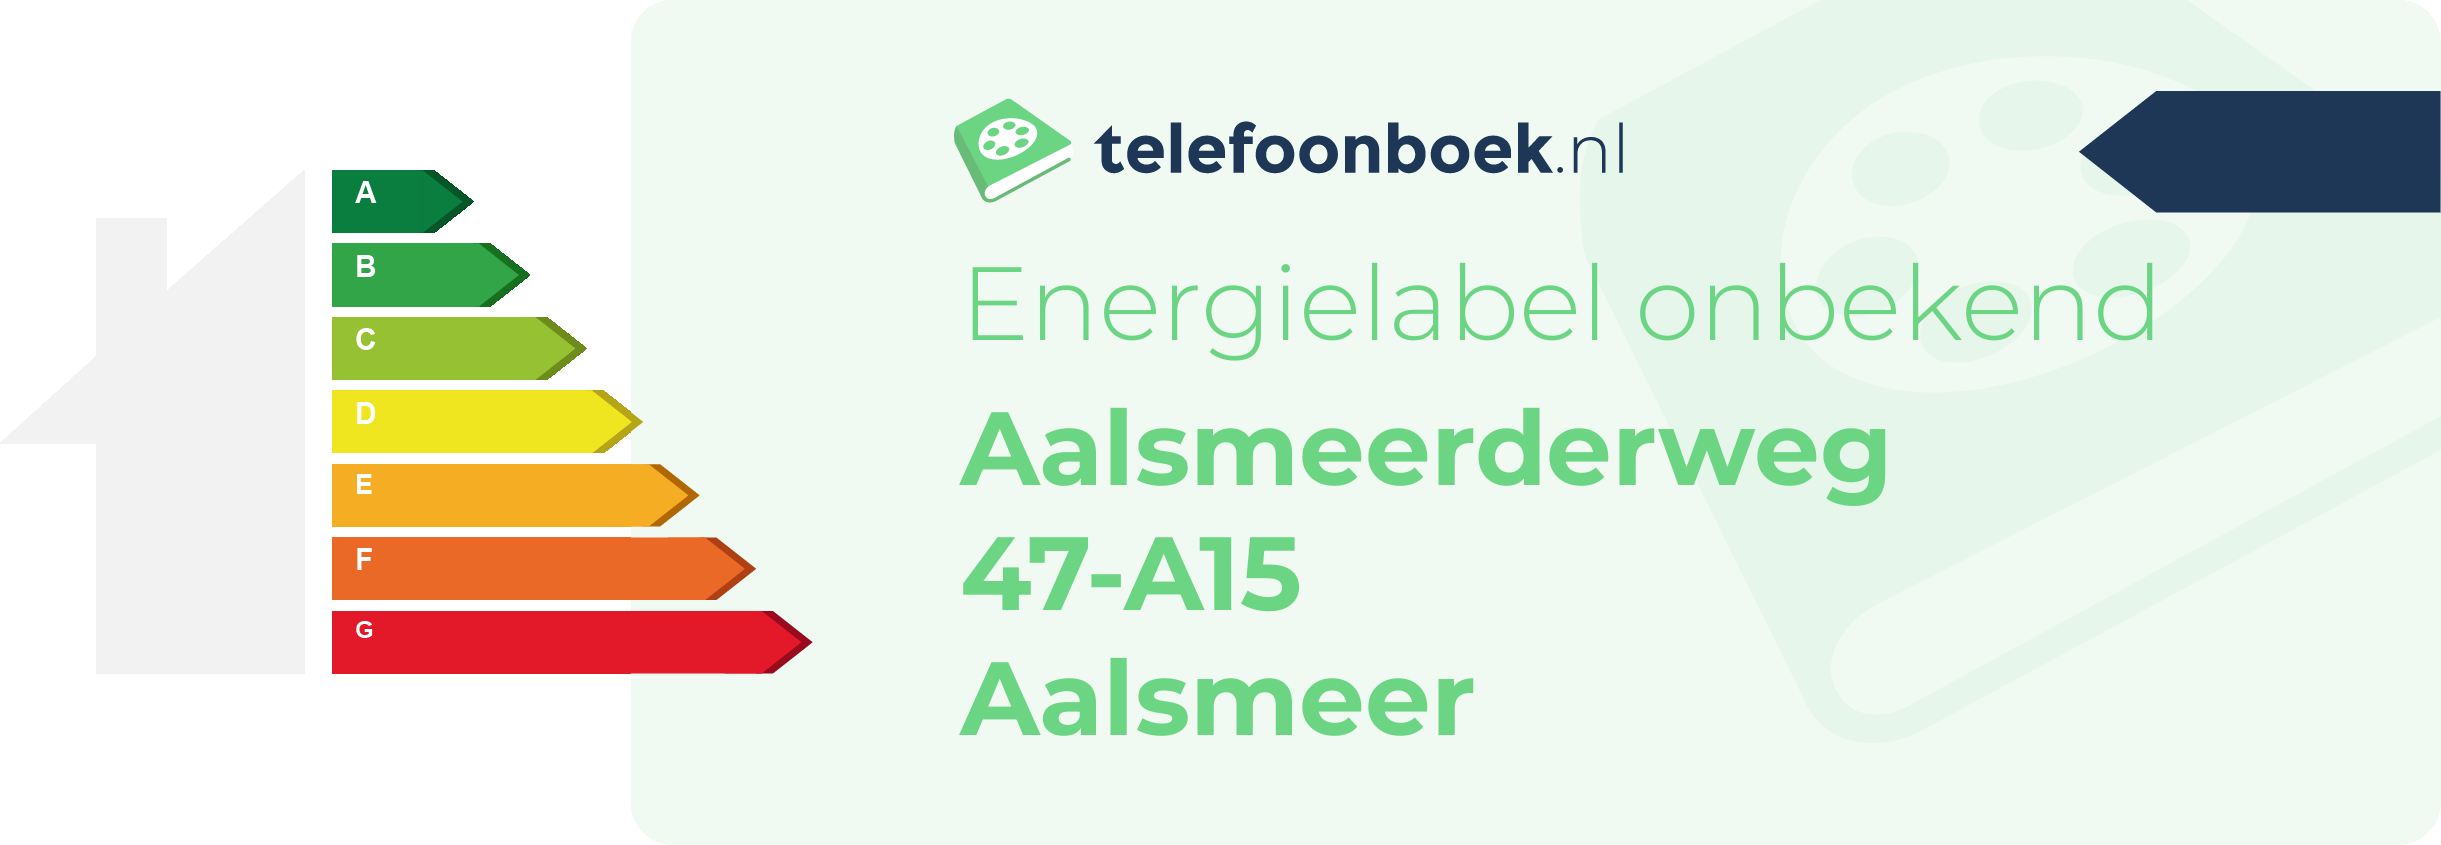 Energielabel Aalsmeerderweg 47-A15 Aalsmeer